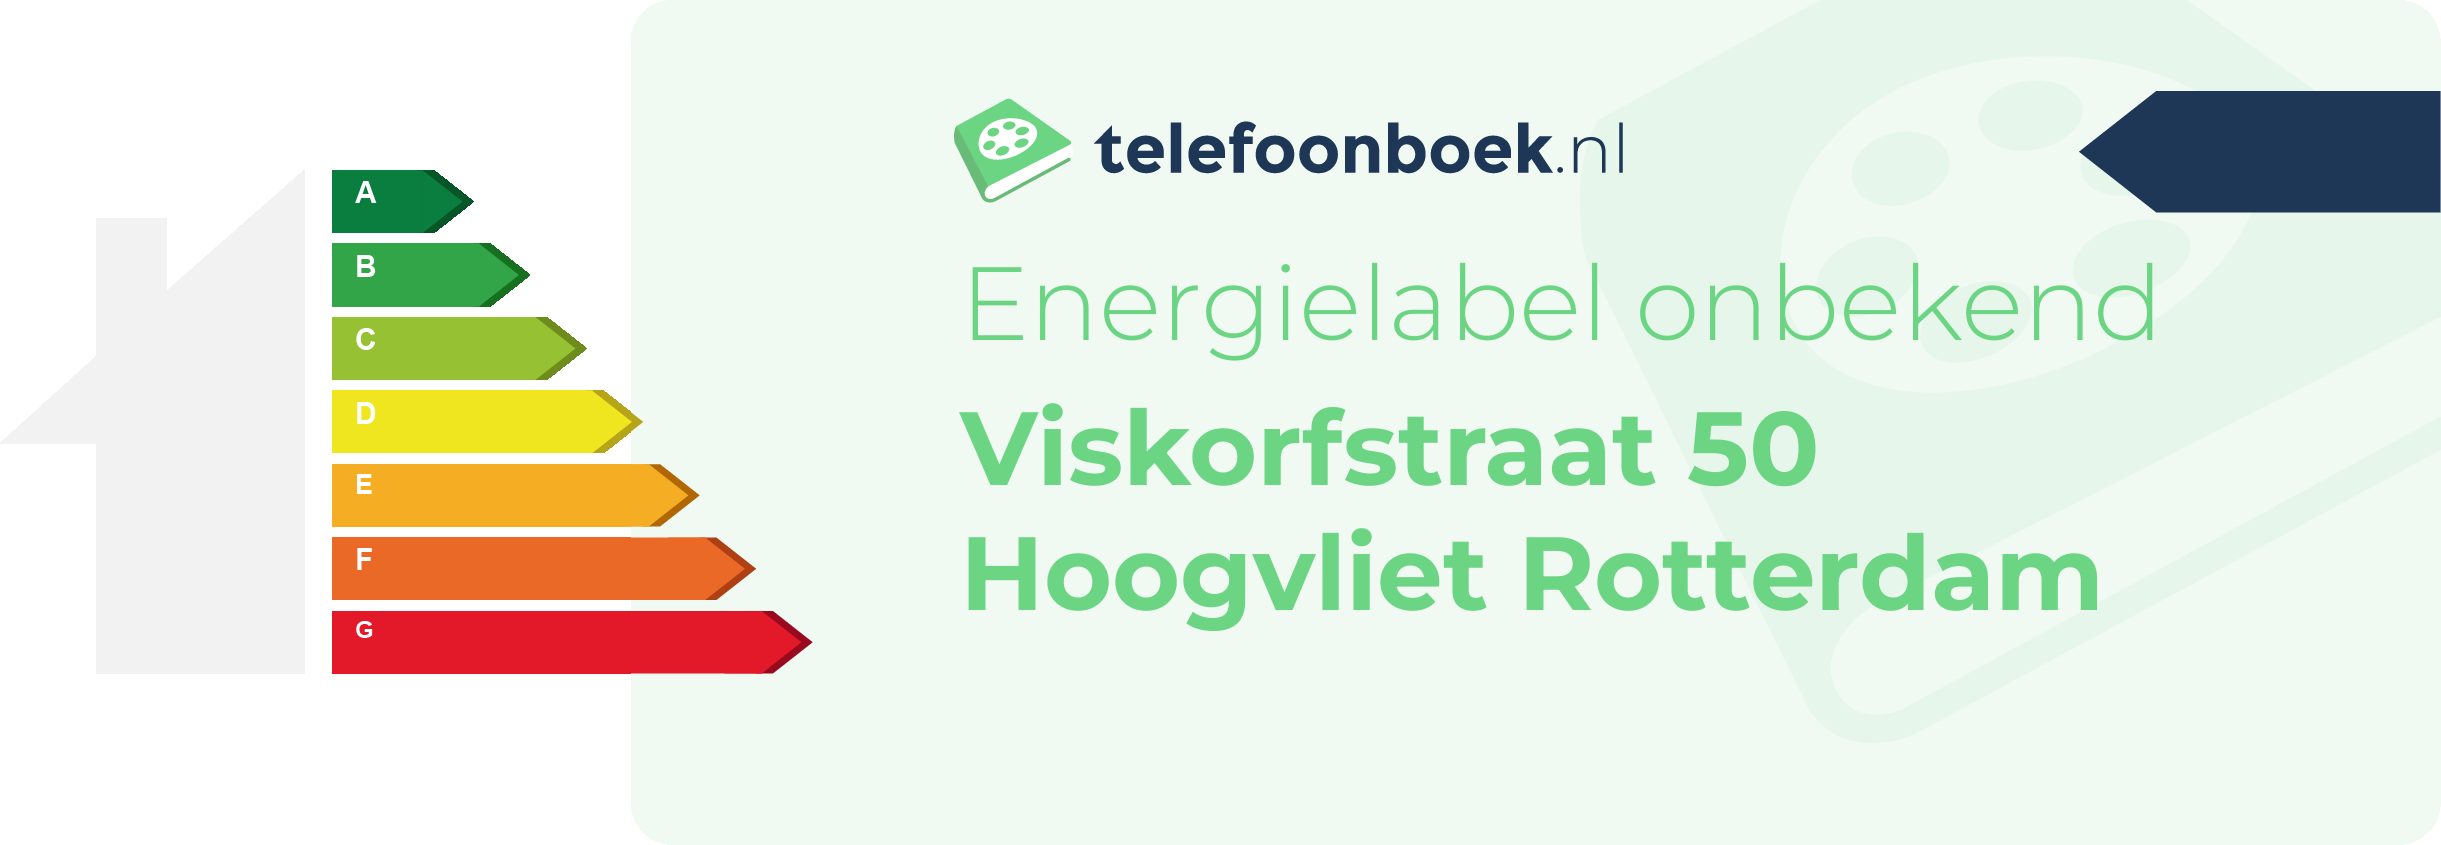 Energielabel Viskorfstraat 50 Hoogvliet Rotterdam